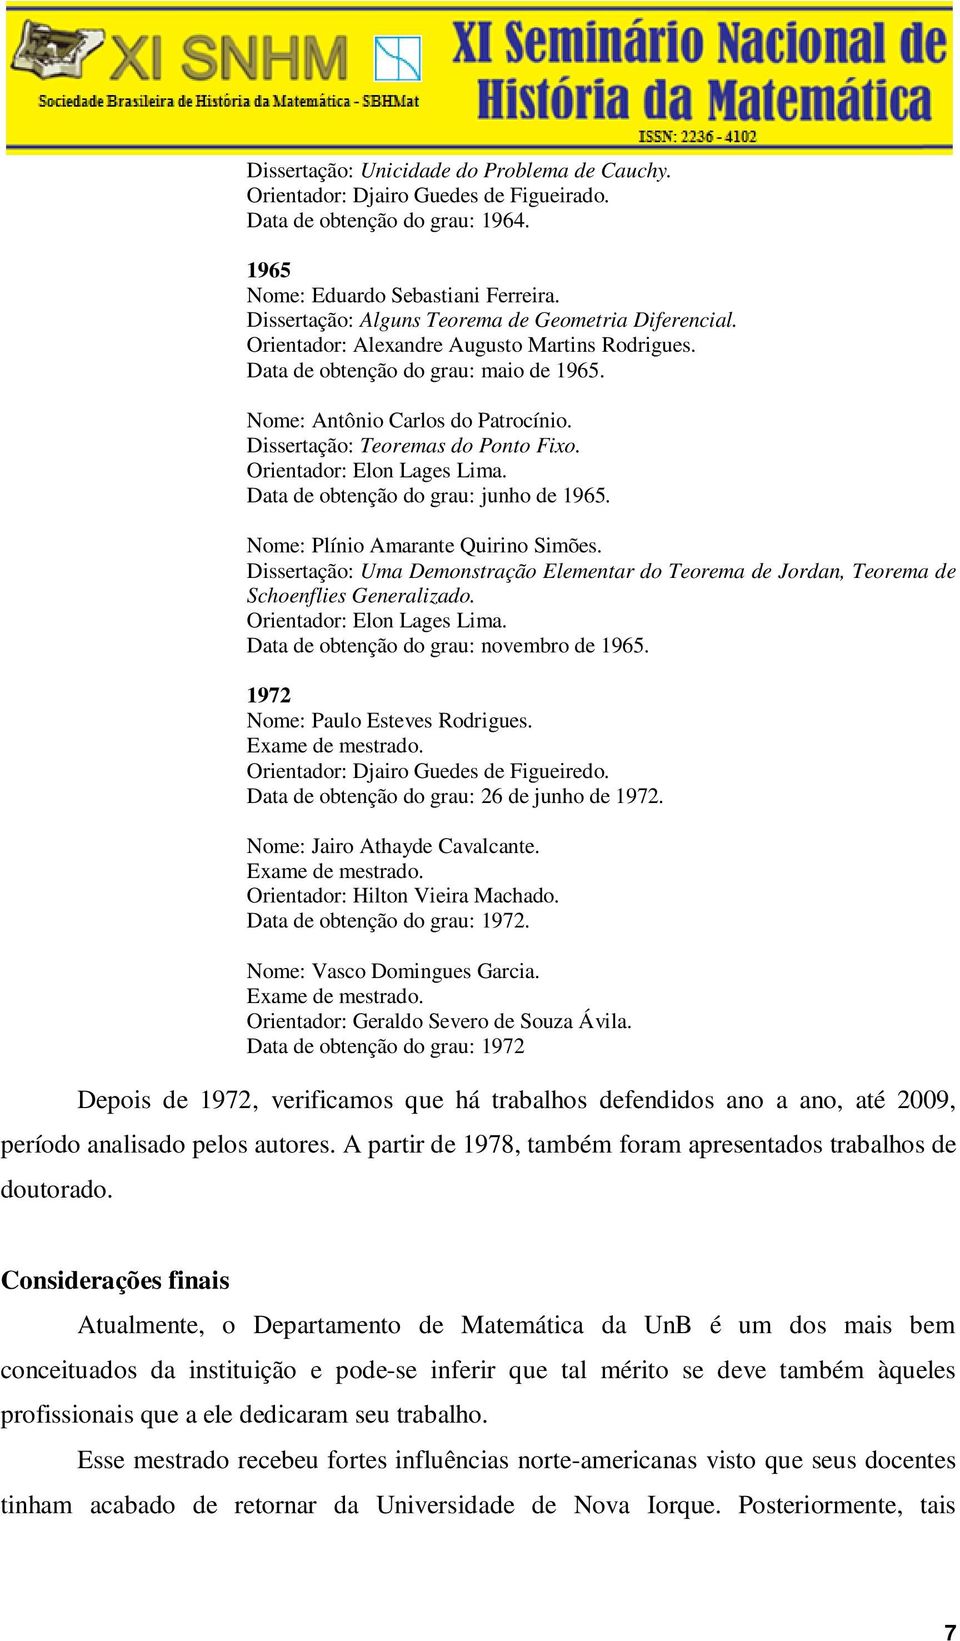 Dissertação: Teoremas do Ponto Fixo. Orientador: Elon Lages Lima. Data de obtenção do grau: junho de 1965. Nome: Plínio Amarante Quirino Simões.